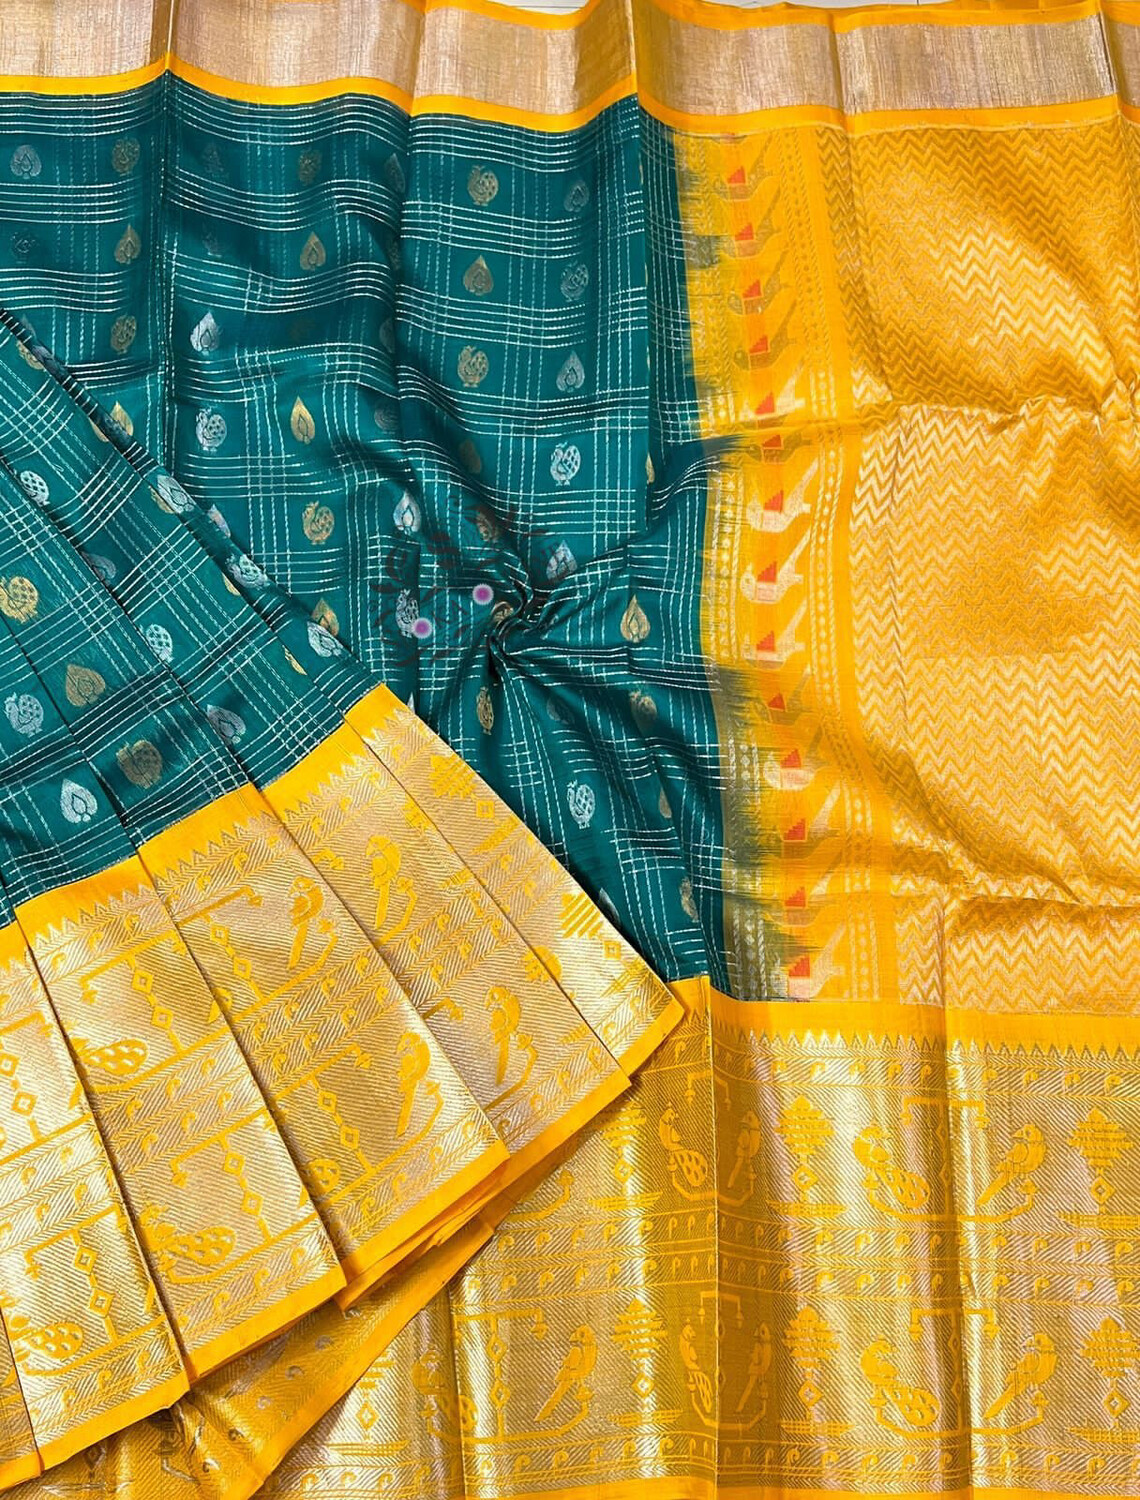 Beautiful colors of  Pure Handloom Kuppadam Pattu Sarees